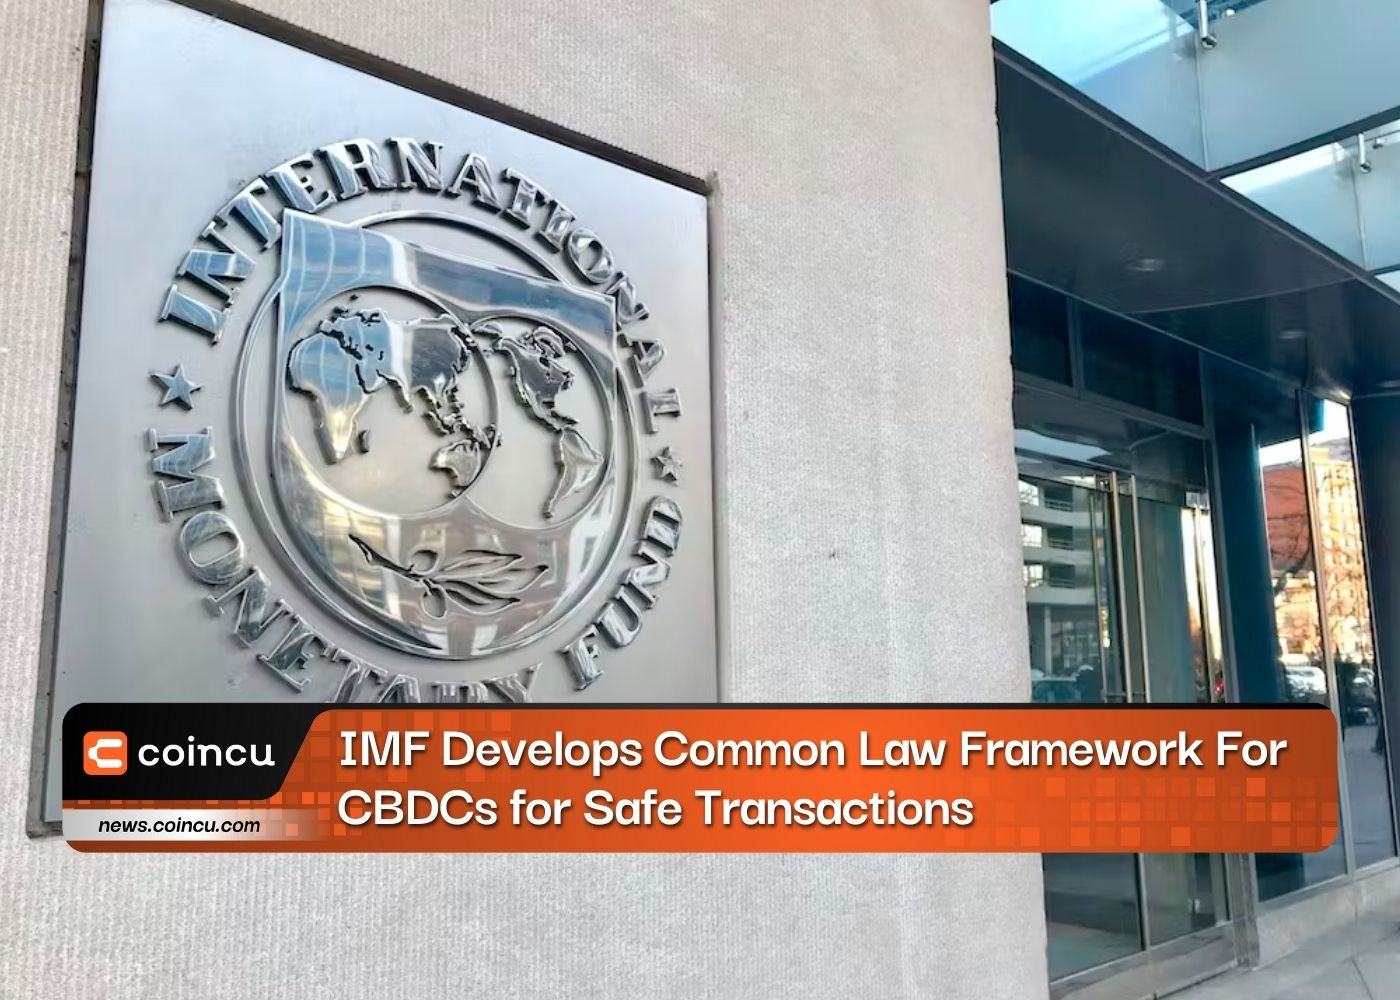 IMF phát triển khung luật chung cho CBDC để giao dịch an toàn